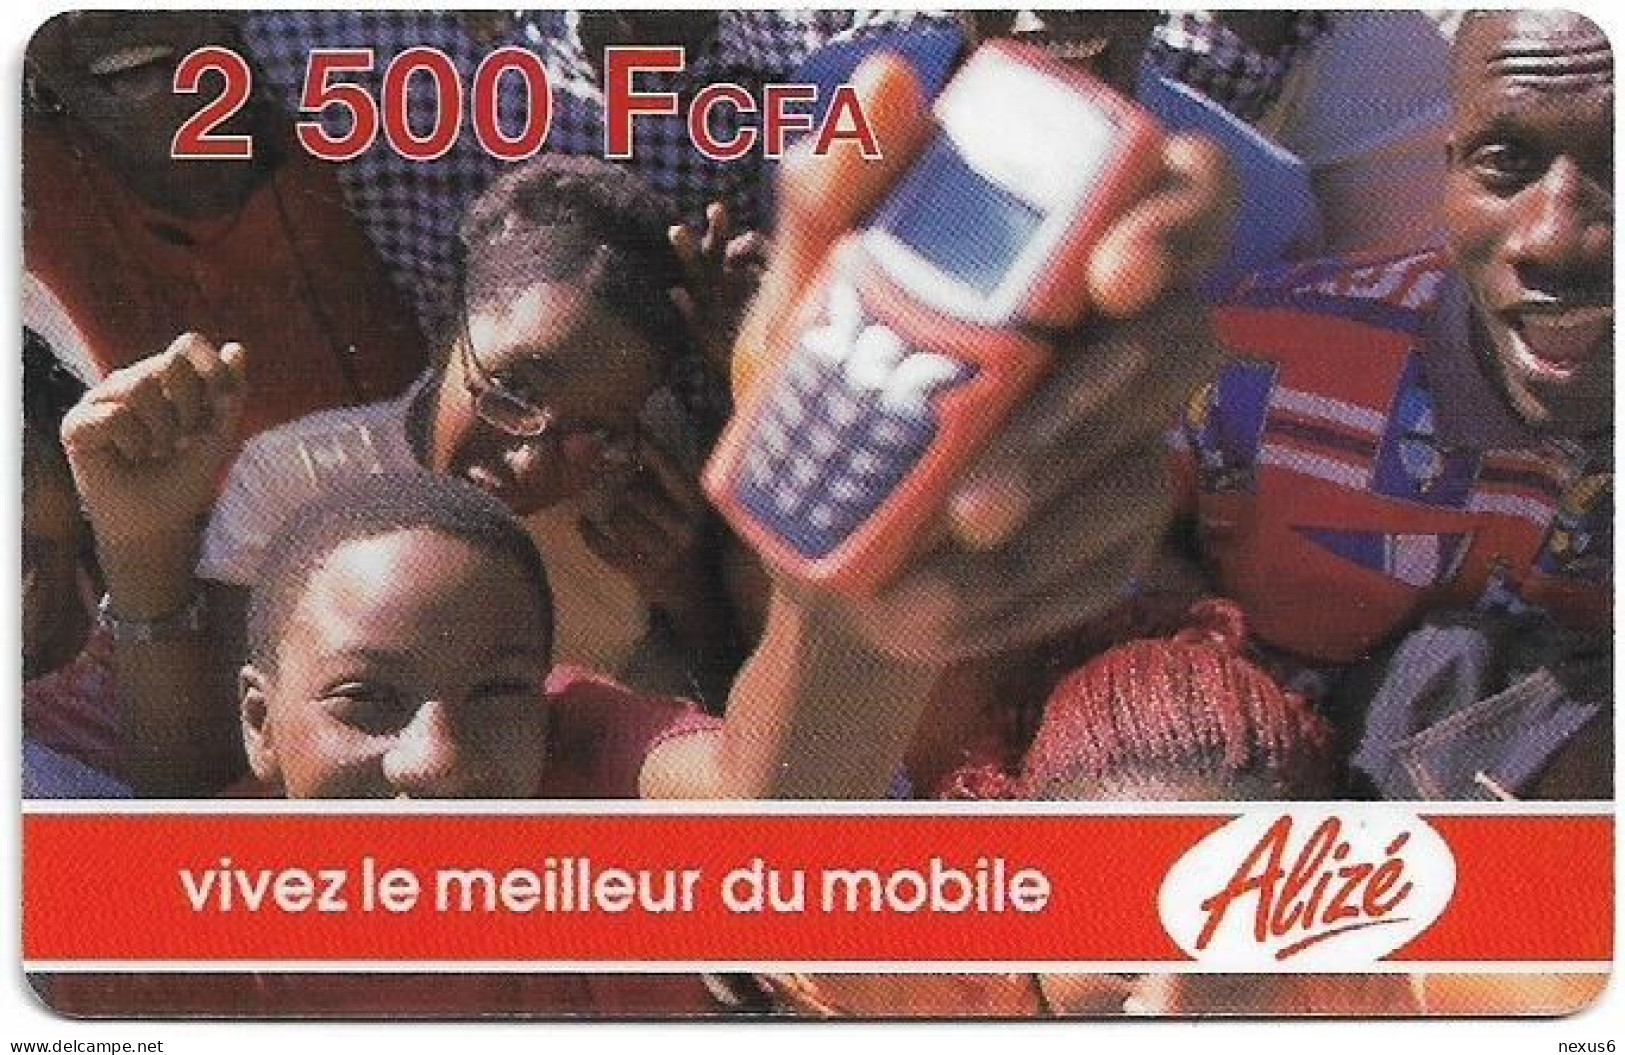 Senegal - Alizé - Vivez Le Meilleur Du Mobile - Crowd And Mobile, Reverse 3, GSM Refill 2.500CFA, Used - Sénégal